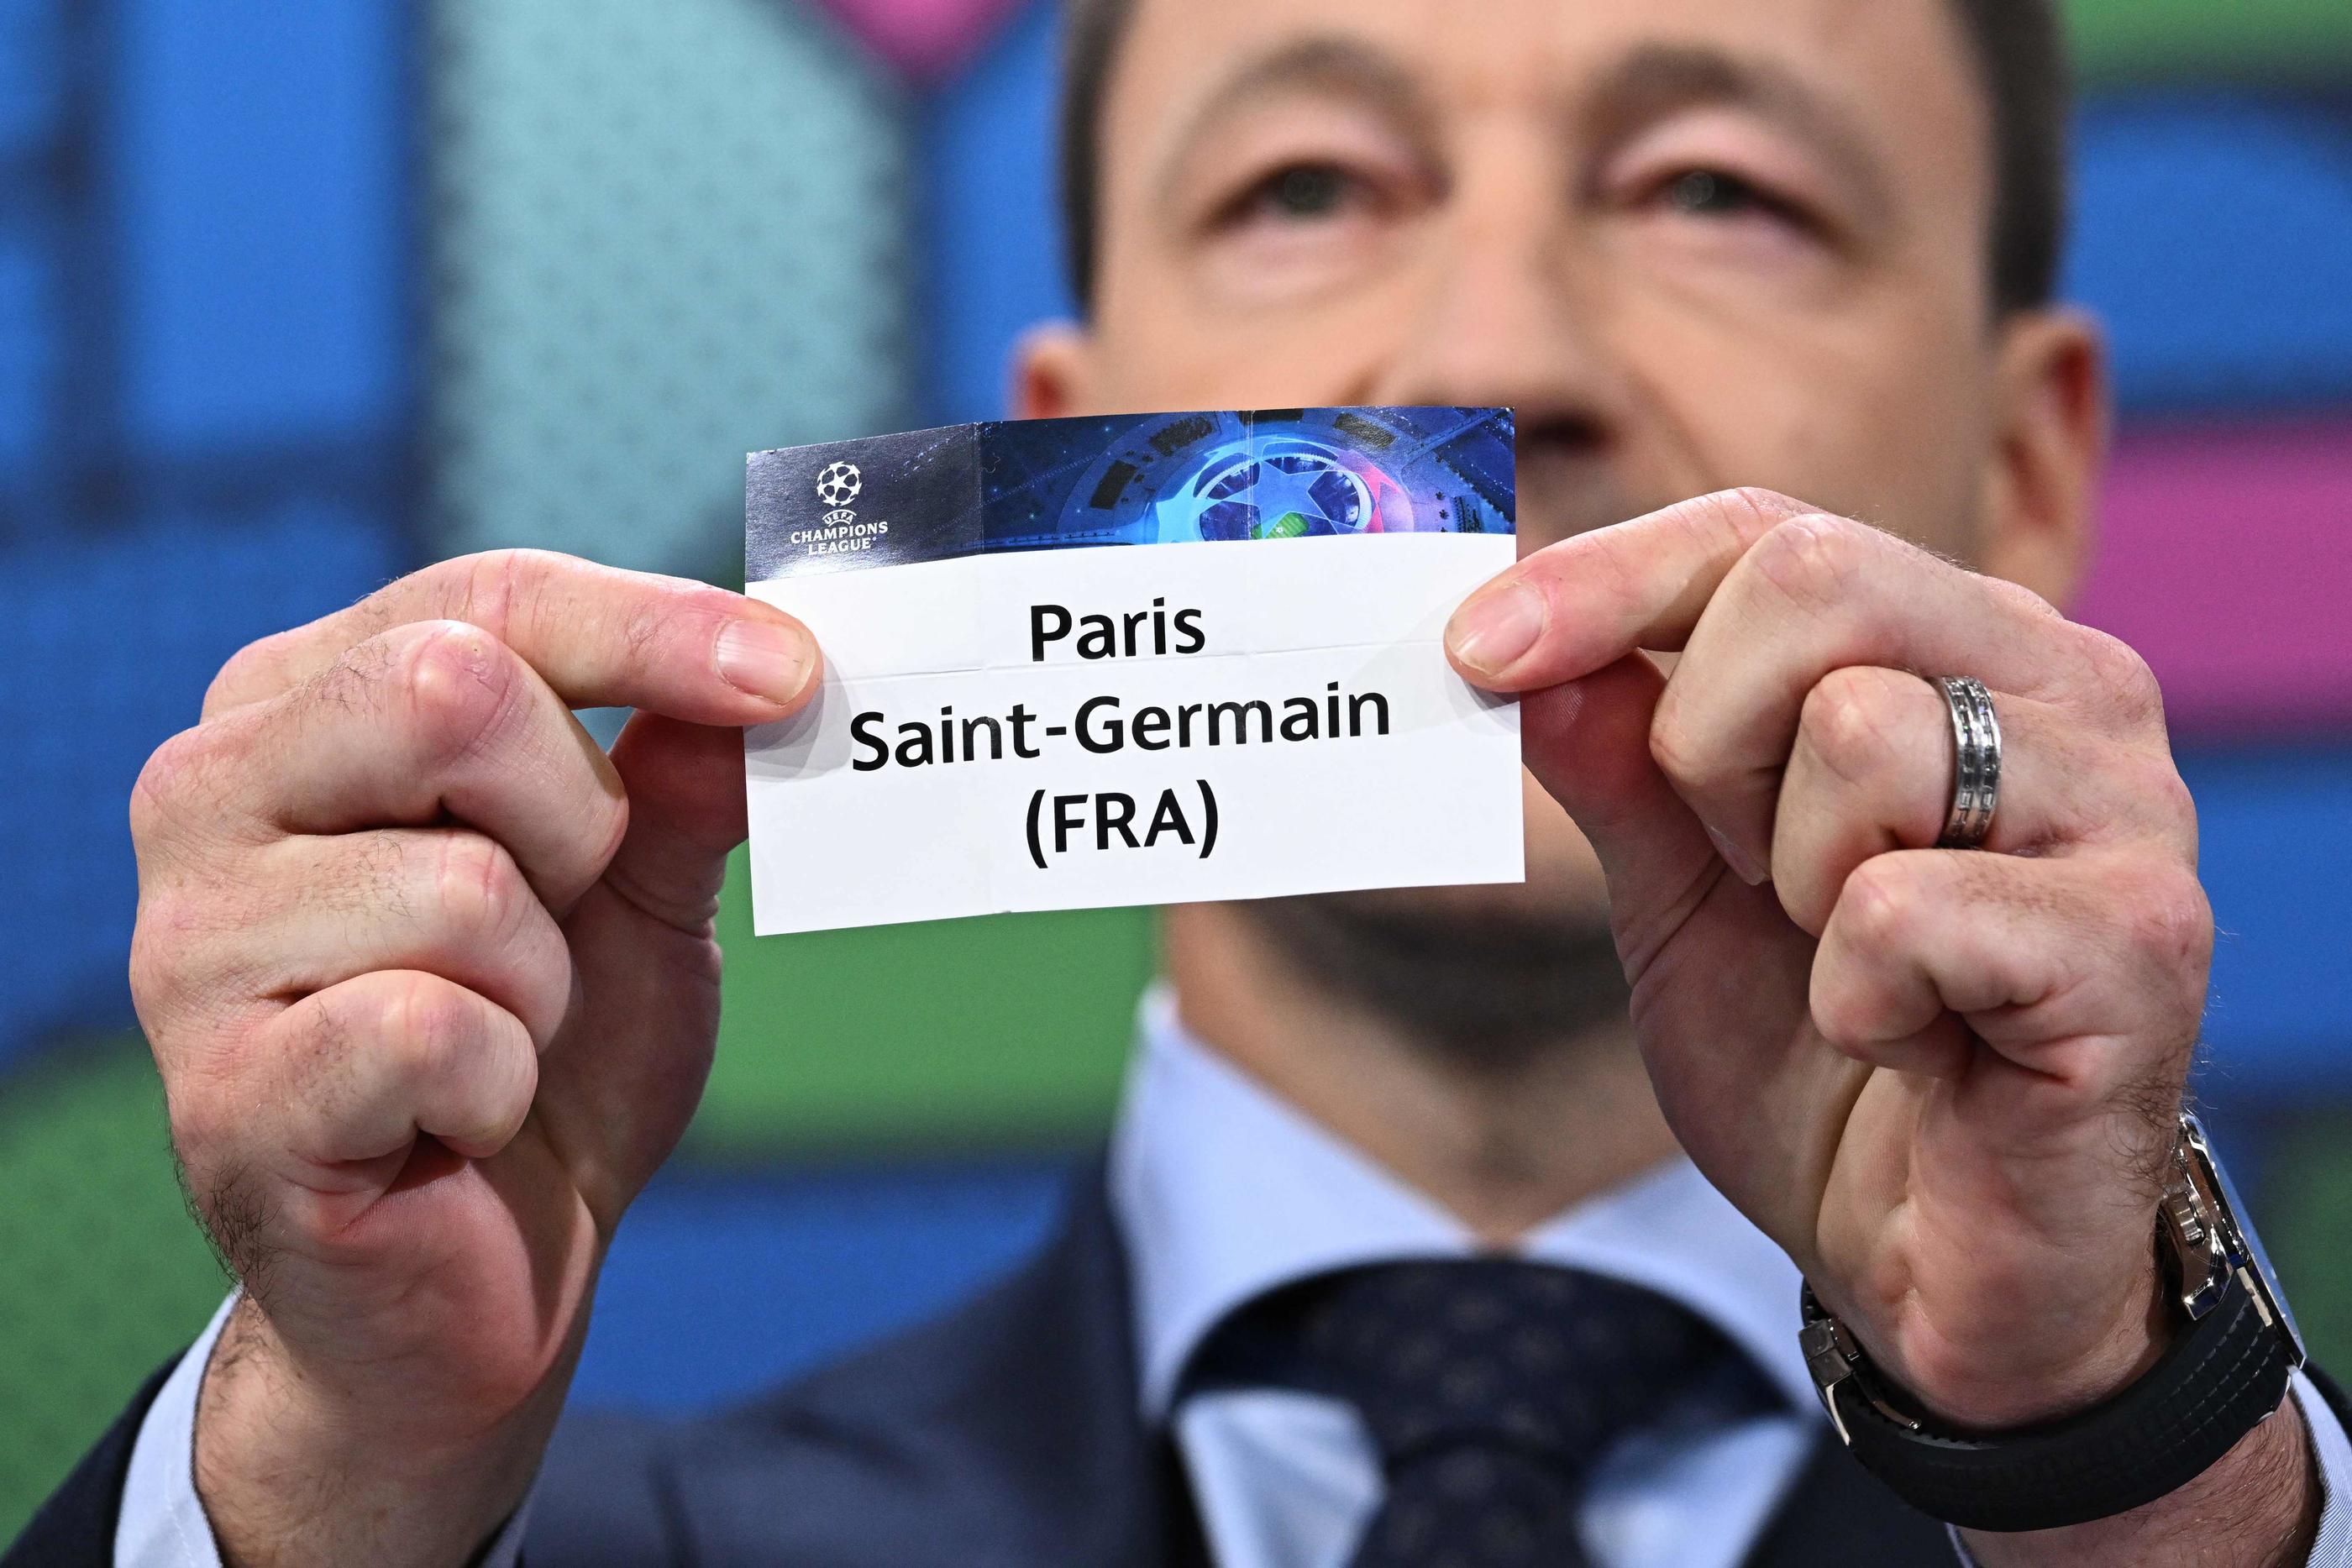 Le Paris Saint-Germain affrontera Barcelone en quarts de finale de Ligue des champions. COFFRINI / AFP